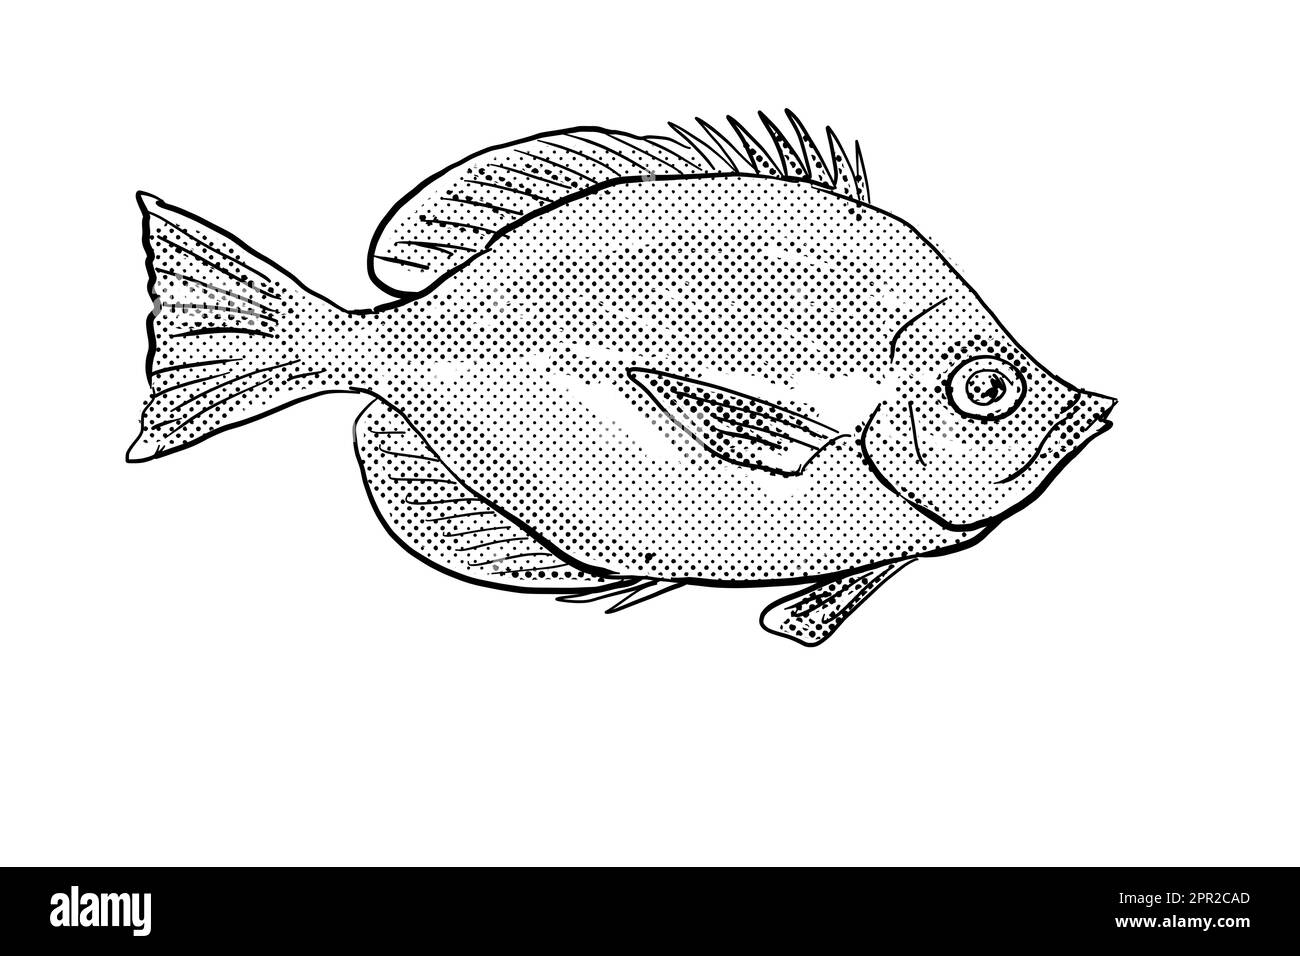 Zeichentrickzeichnung eines Hemitaurichthys thompson's Butterflyfish, eines Fischs, der auf Hawaii und hawaiianischen Inselgruppen endemisch ist, mit Halbtonpunkt Stockfoto